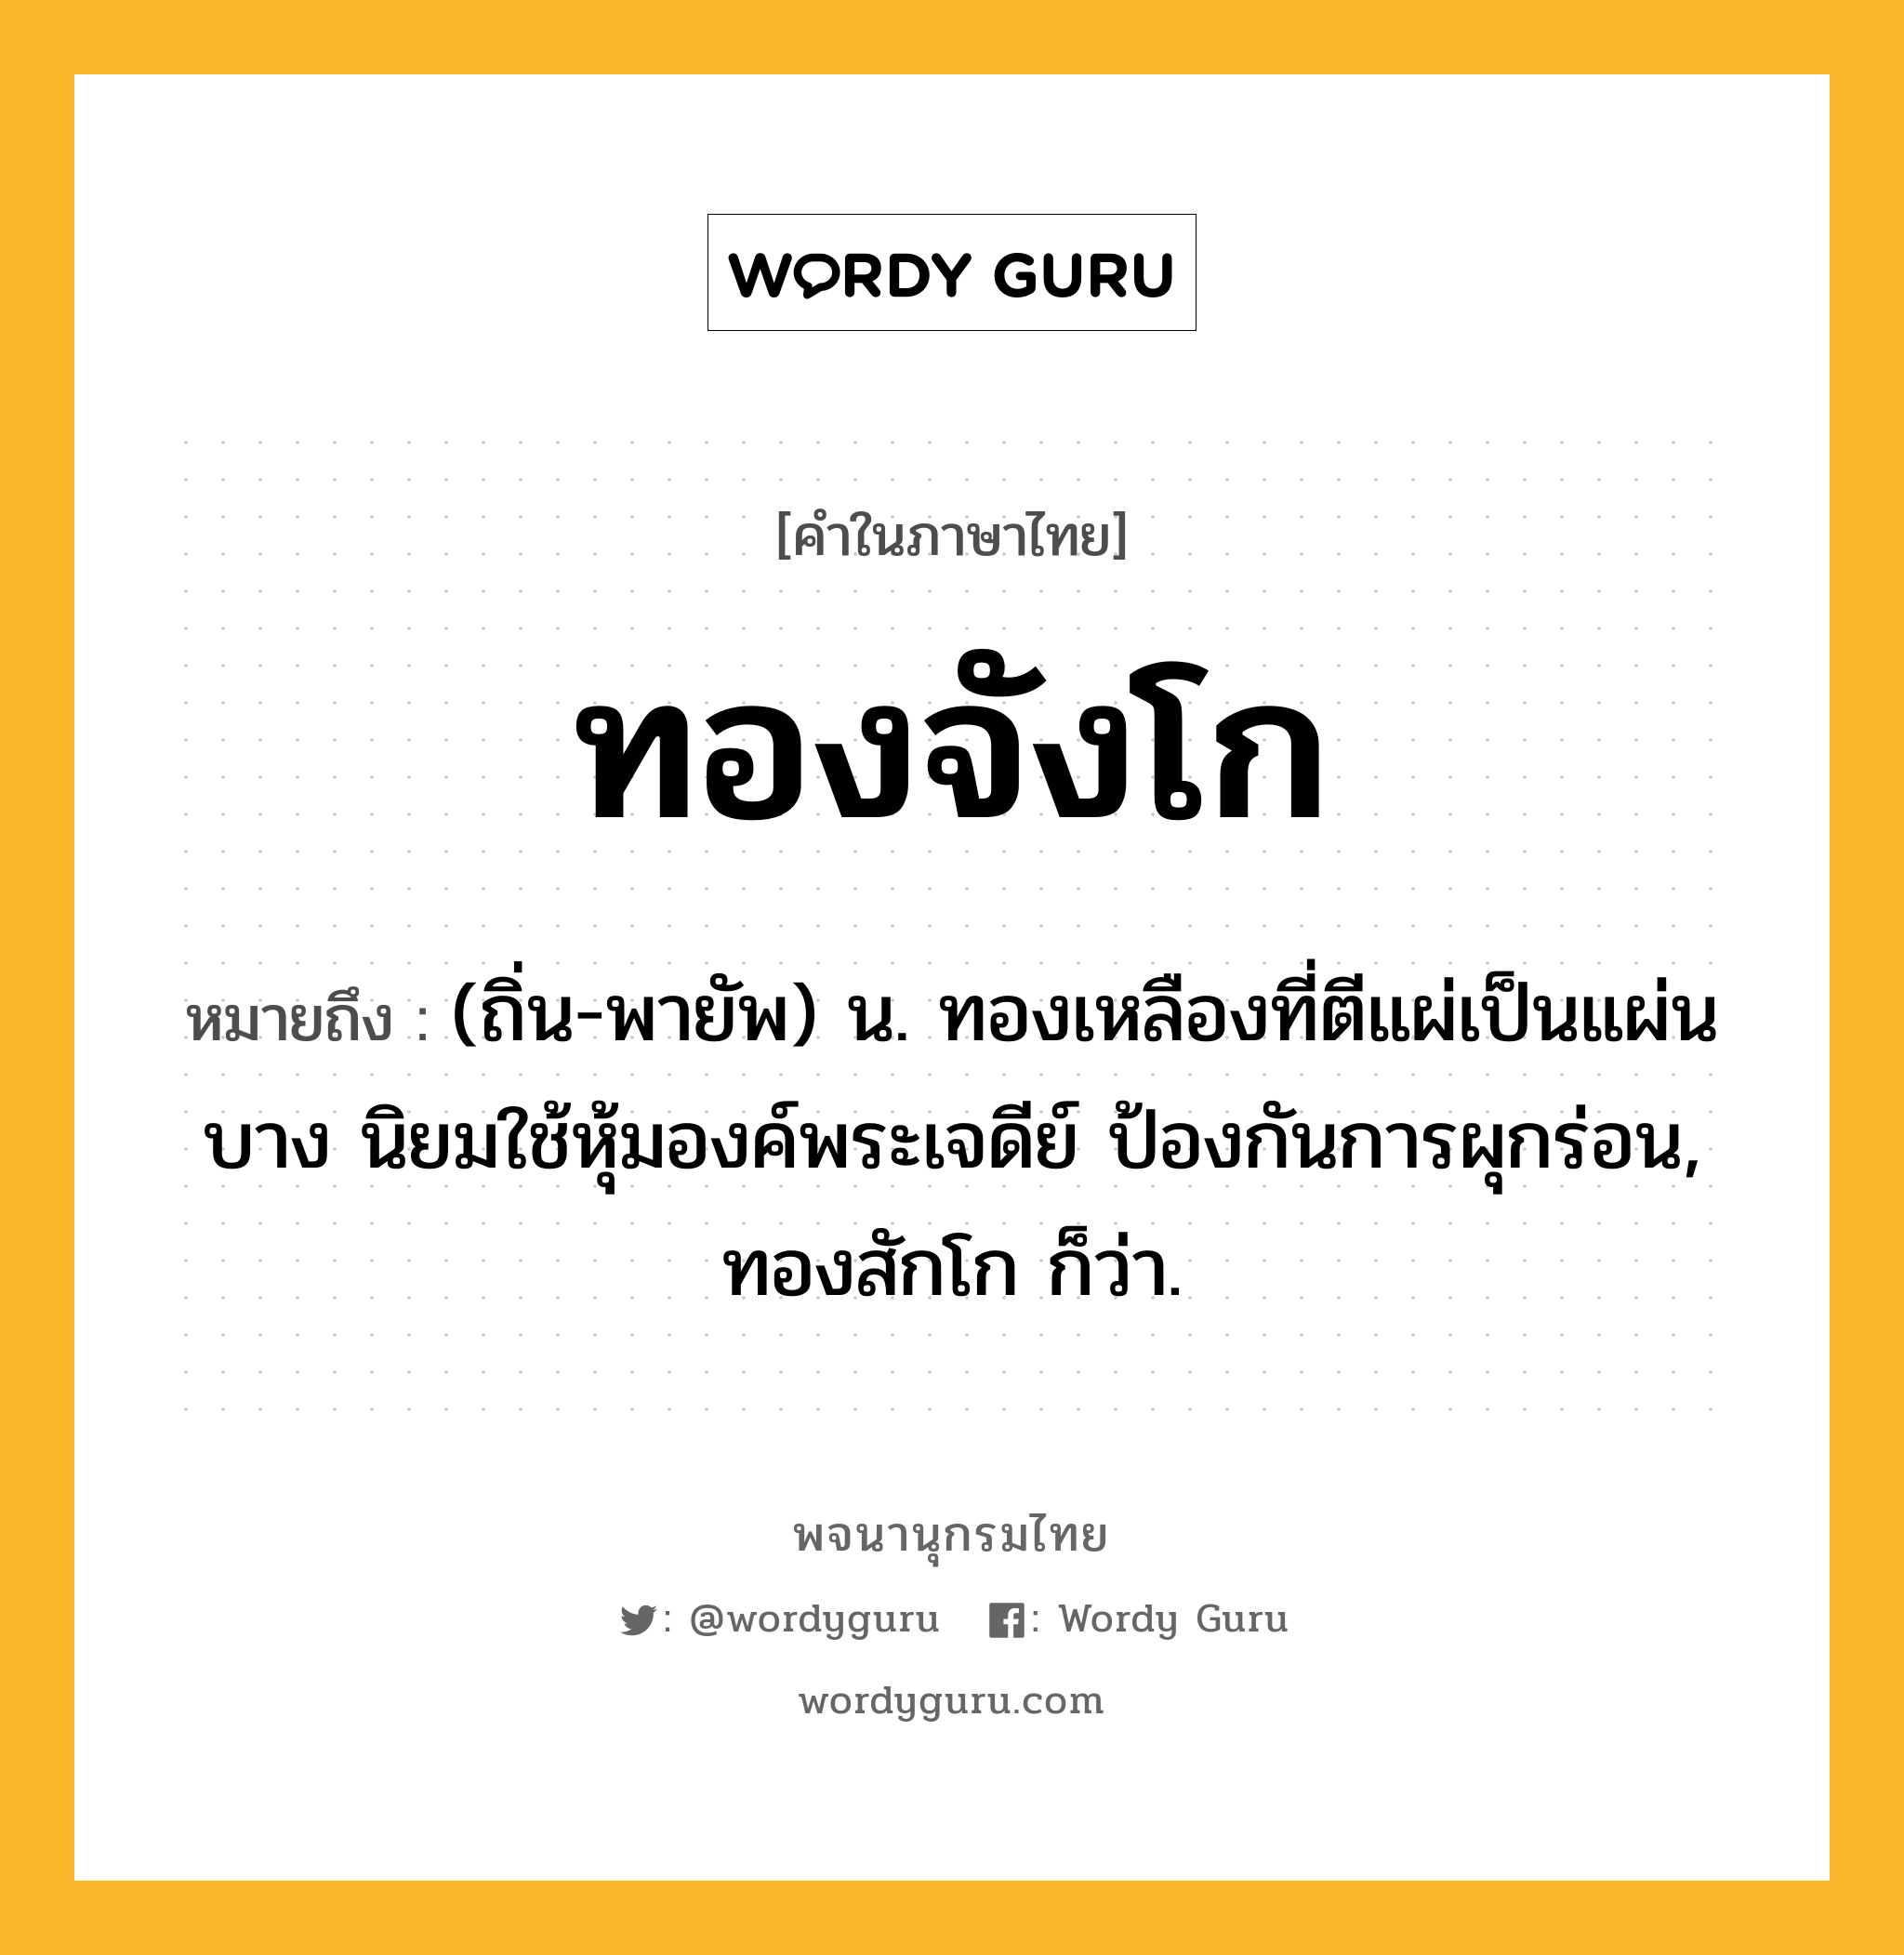 ทองจังโก ความหมาย หมายถึงอะไร?, คำในภาษาไทย ทองจังโก หมายถึง (ถิ่น-พายัพ) น. ทองเหลืองที่ตีแผ่เป็นแผ่นบาง นิยมใช้หุ้มองค์พระเจดีย์ ป้องกันการผุกร่อน, ทองสักโก ก็ว่า.